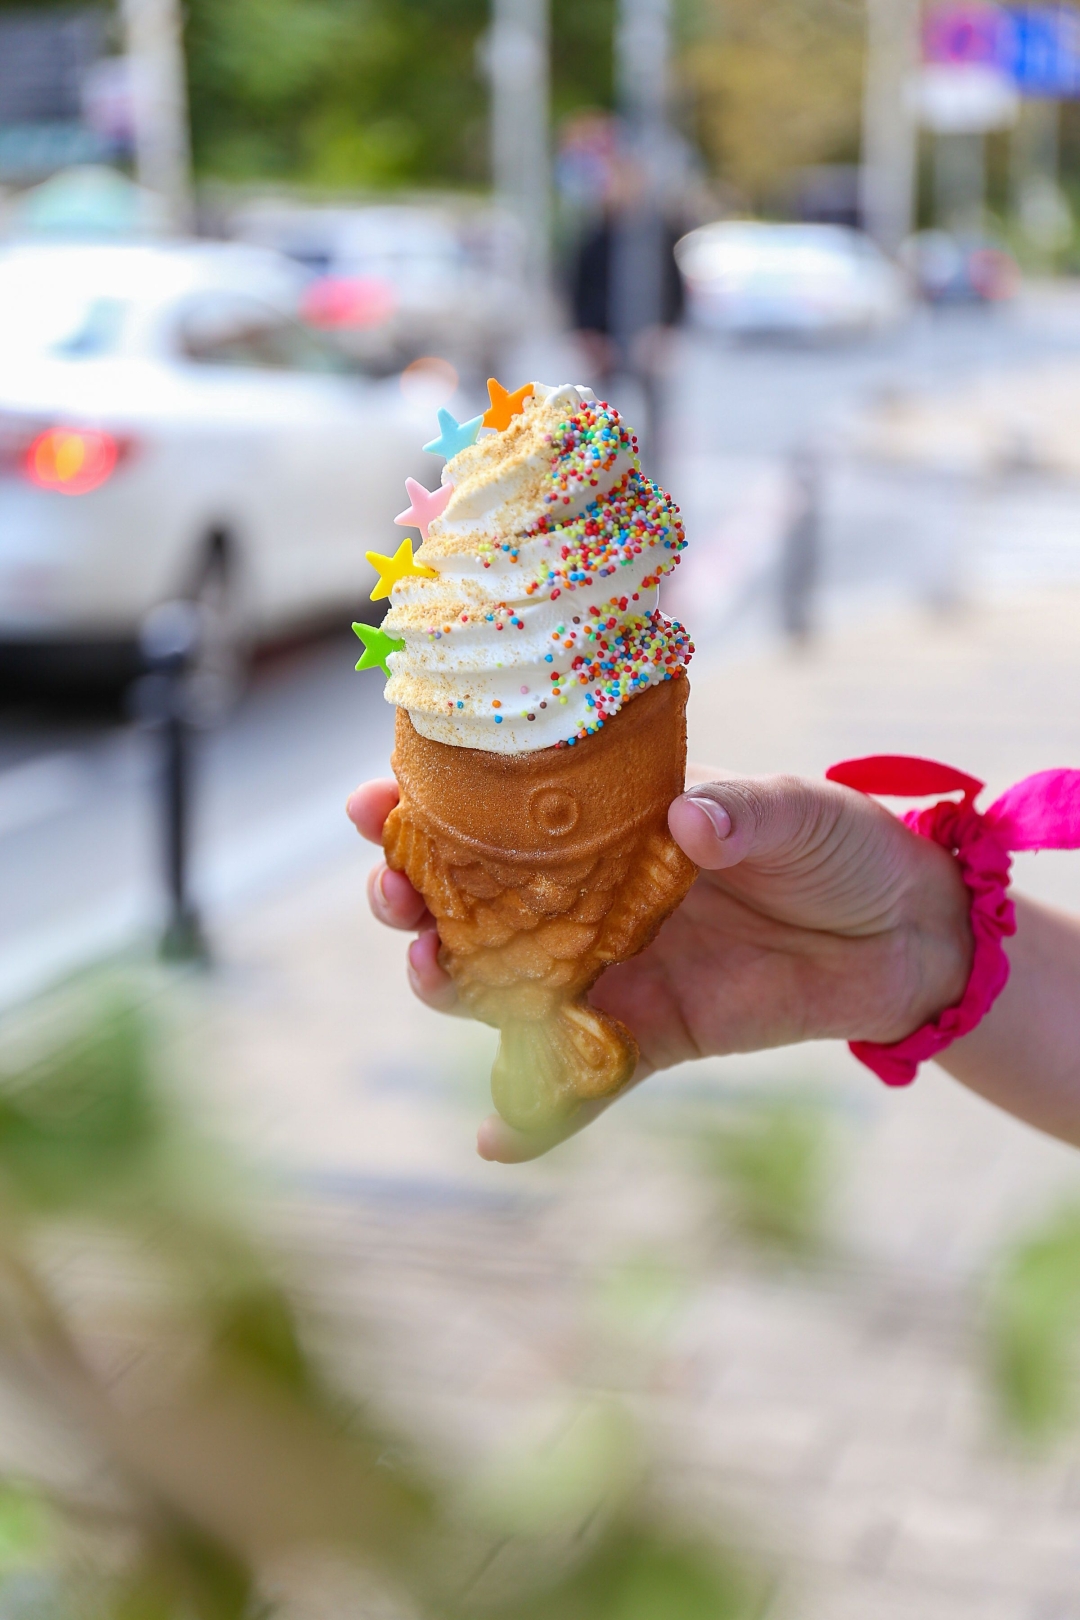 Riječka slastičarnica poslužuje sladoled kakav ne možete pronaći nigdje u Hrvatskoj